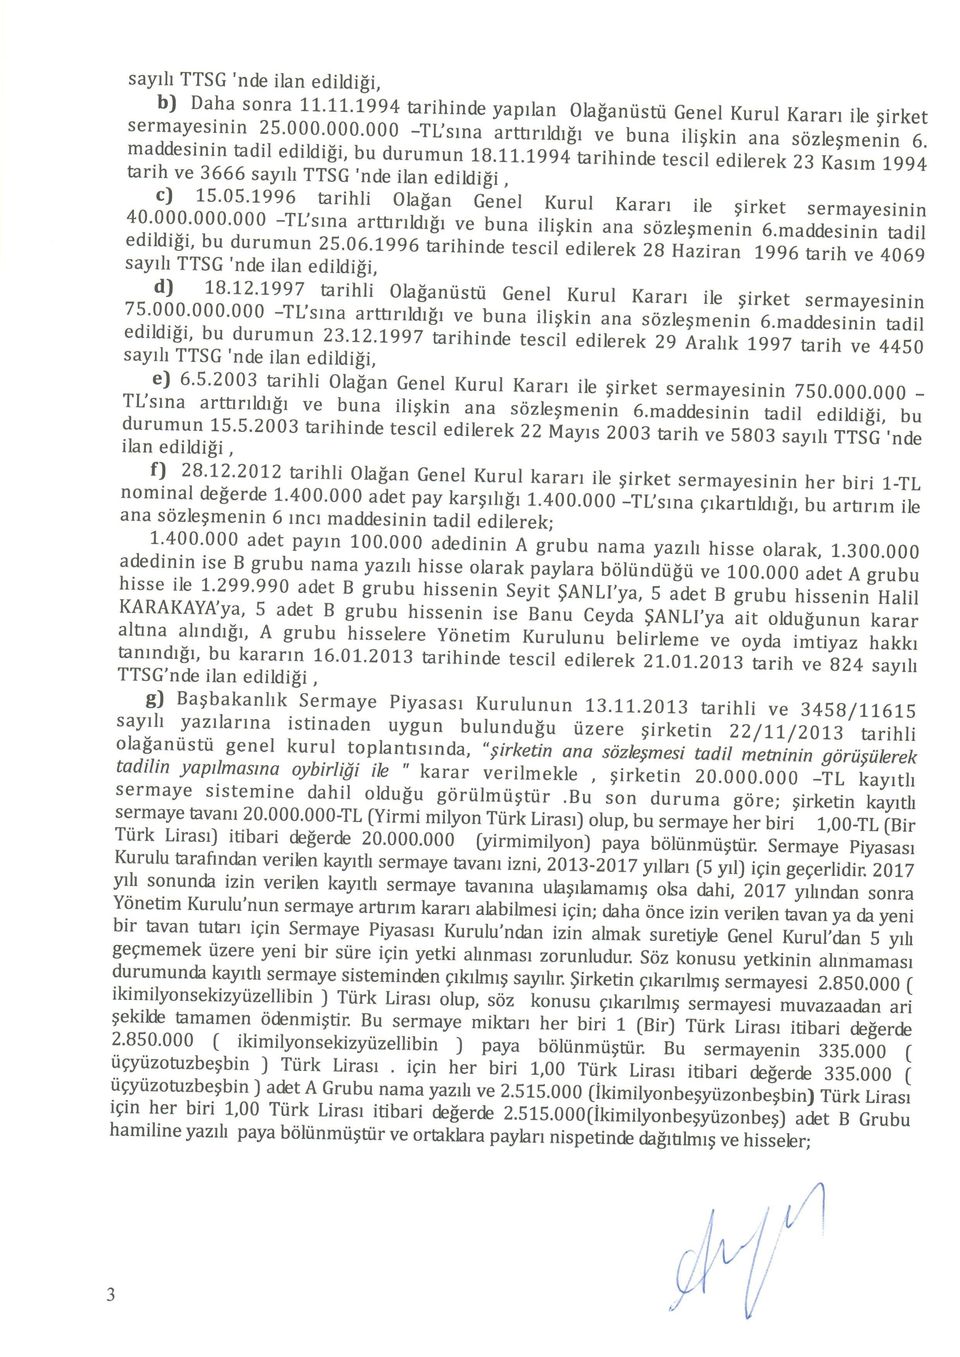 L99[tarihinde tescil edilerek tarih 23 Kasrm 3666 sayrh 1,gg4 TTSG 'nde ilan edildisi, c) 15'05'1996 tarihli ola$an Genel Kurul Kararr ile girket 40'000'000'000 -Tl'srna sermayesinin artrrrrldi$t